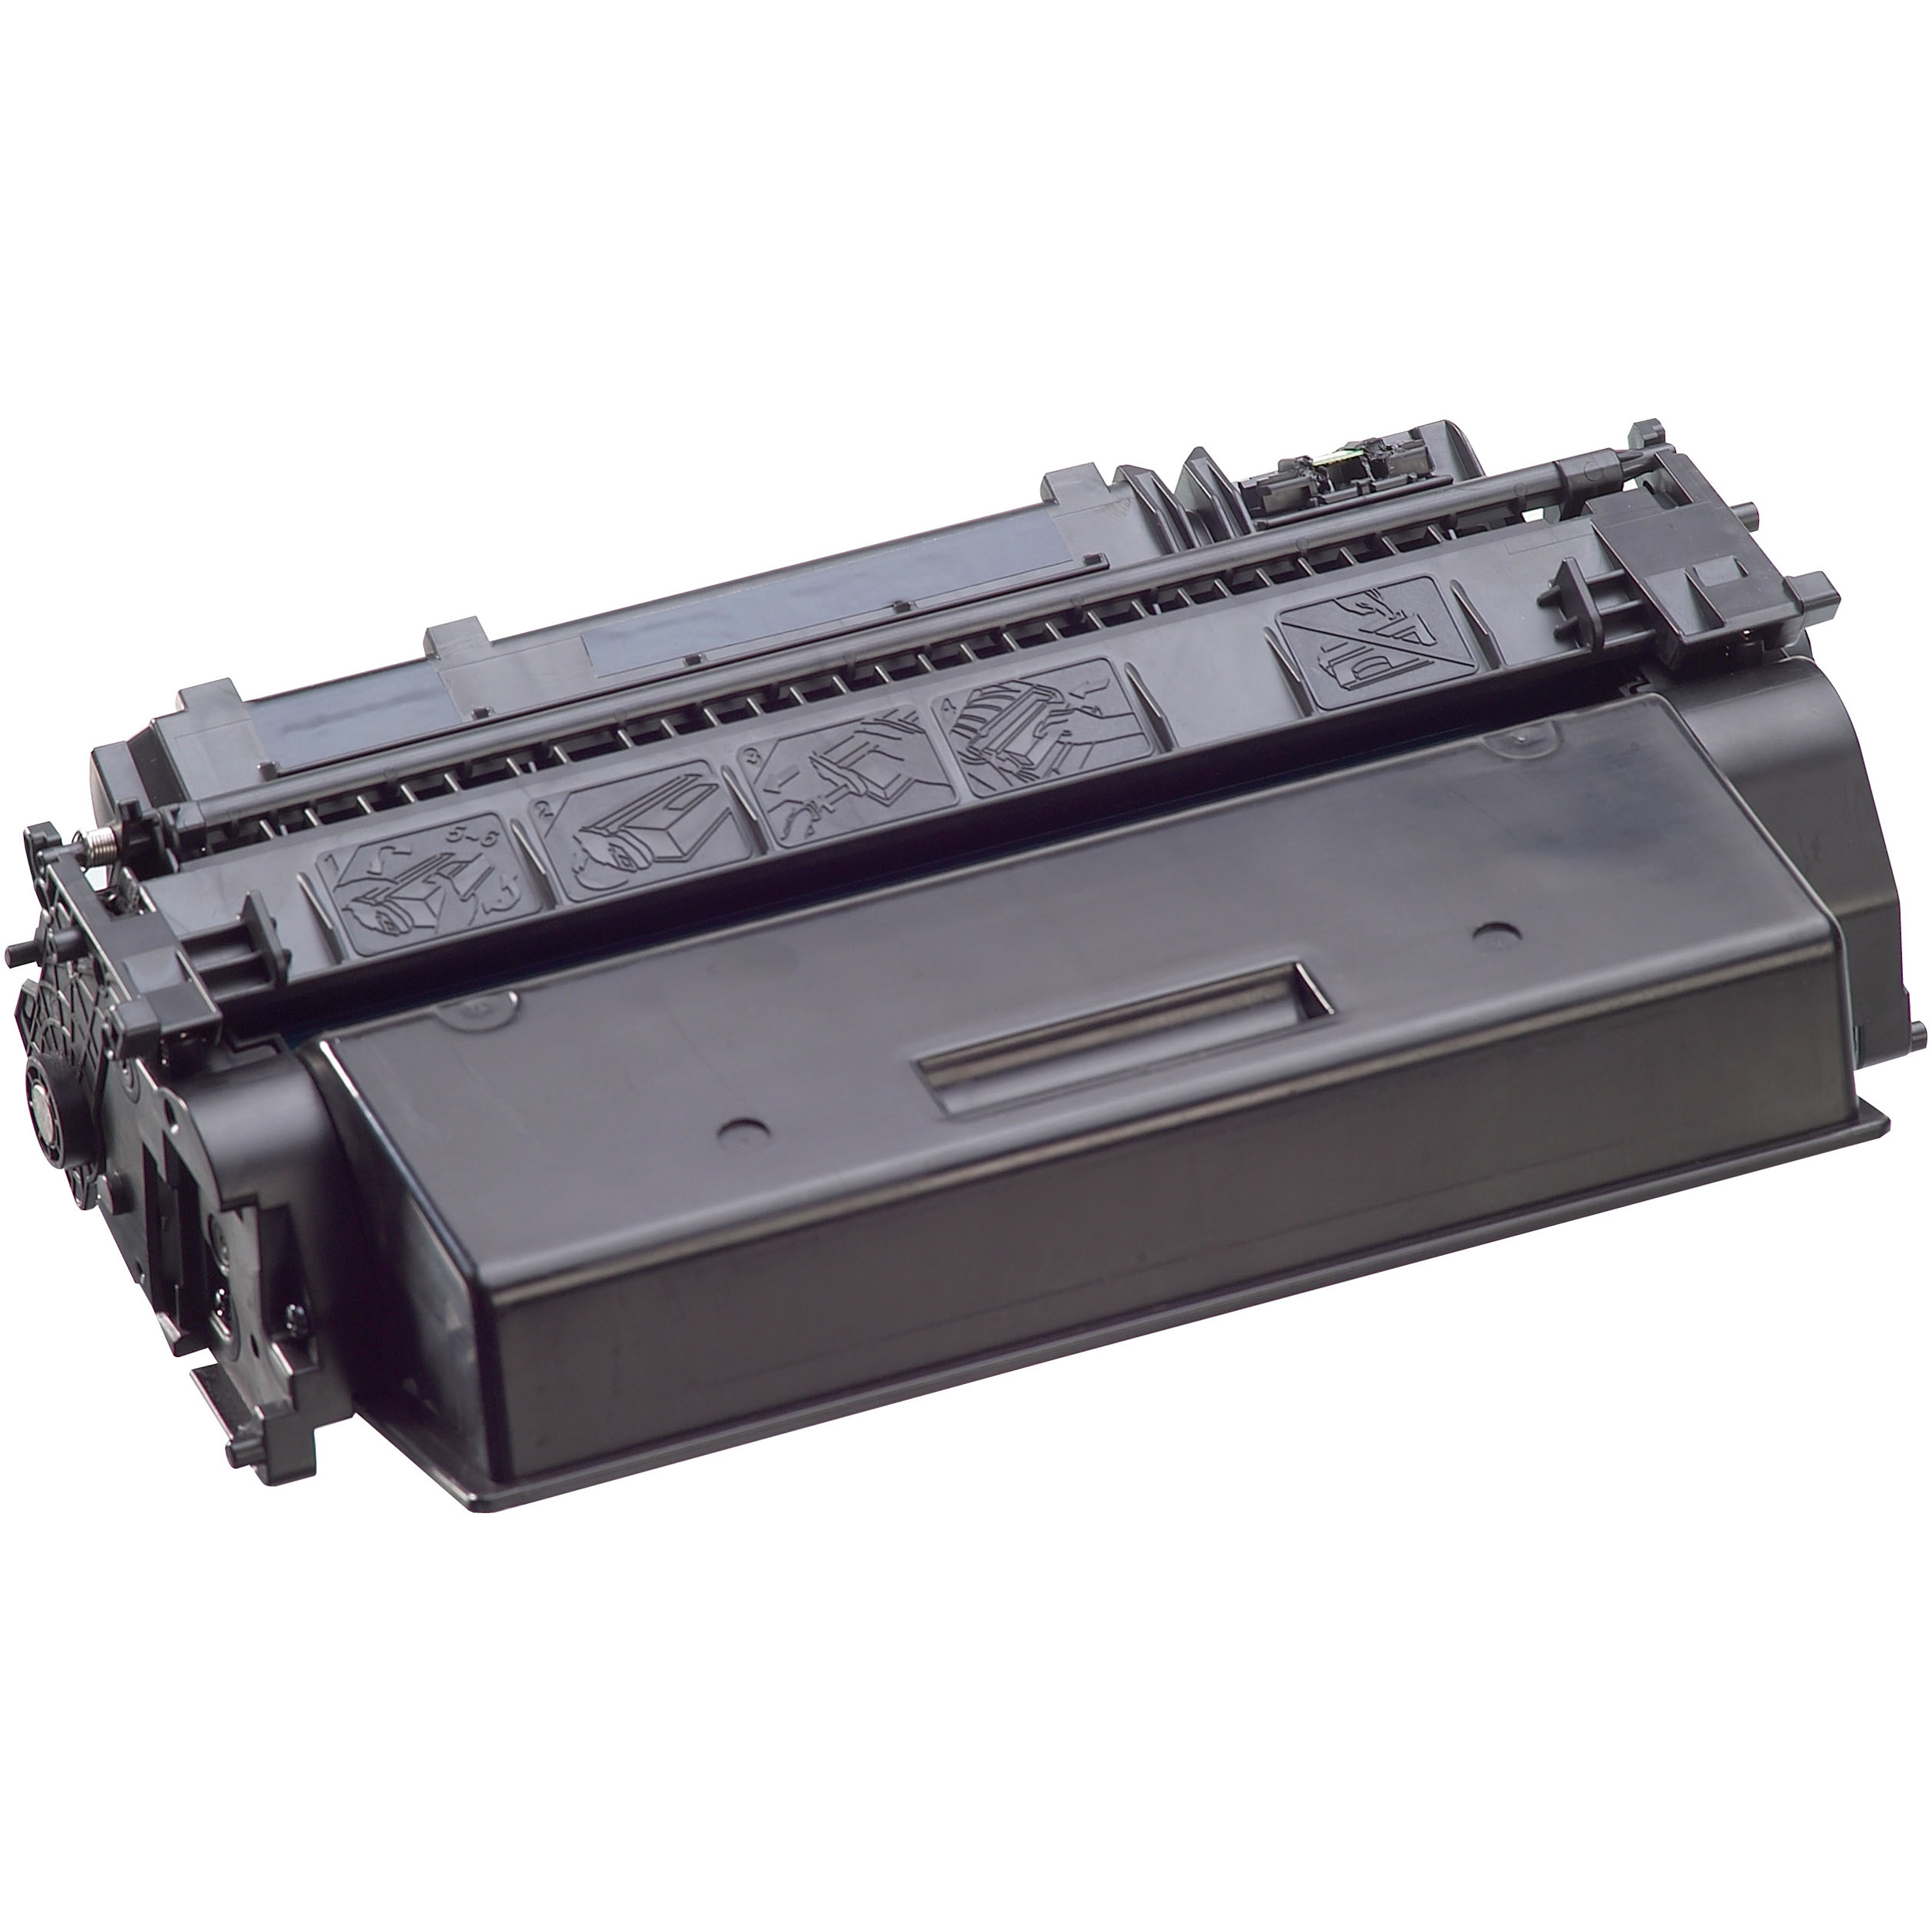 KMP KMP Toner für 05X XXL (CE505X) schwarz Black (CE505X) Toner HP